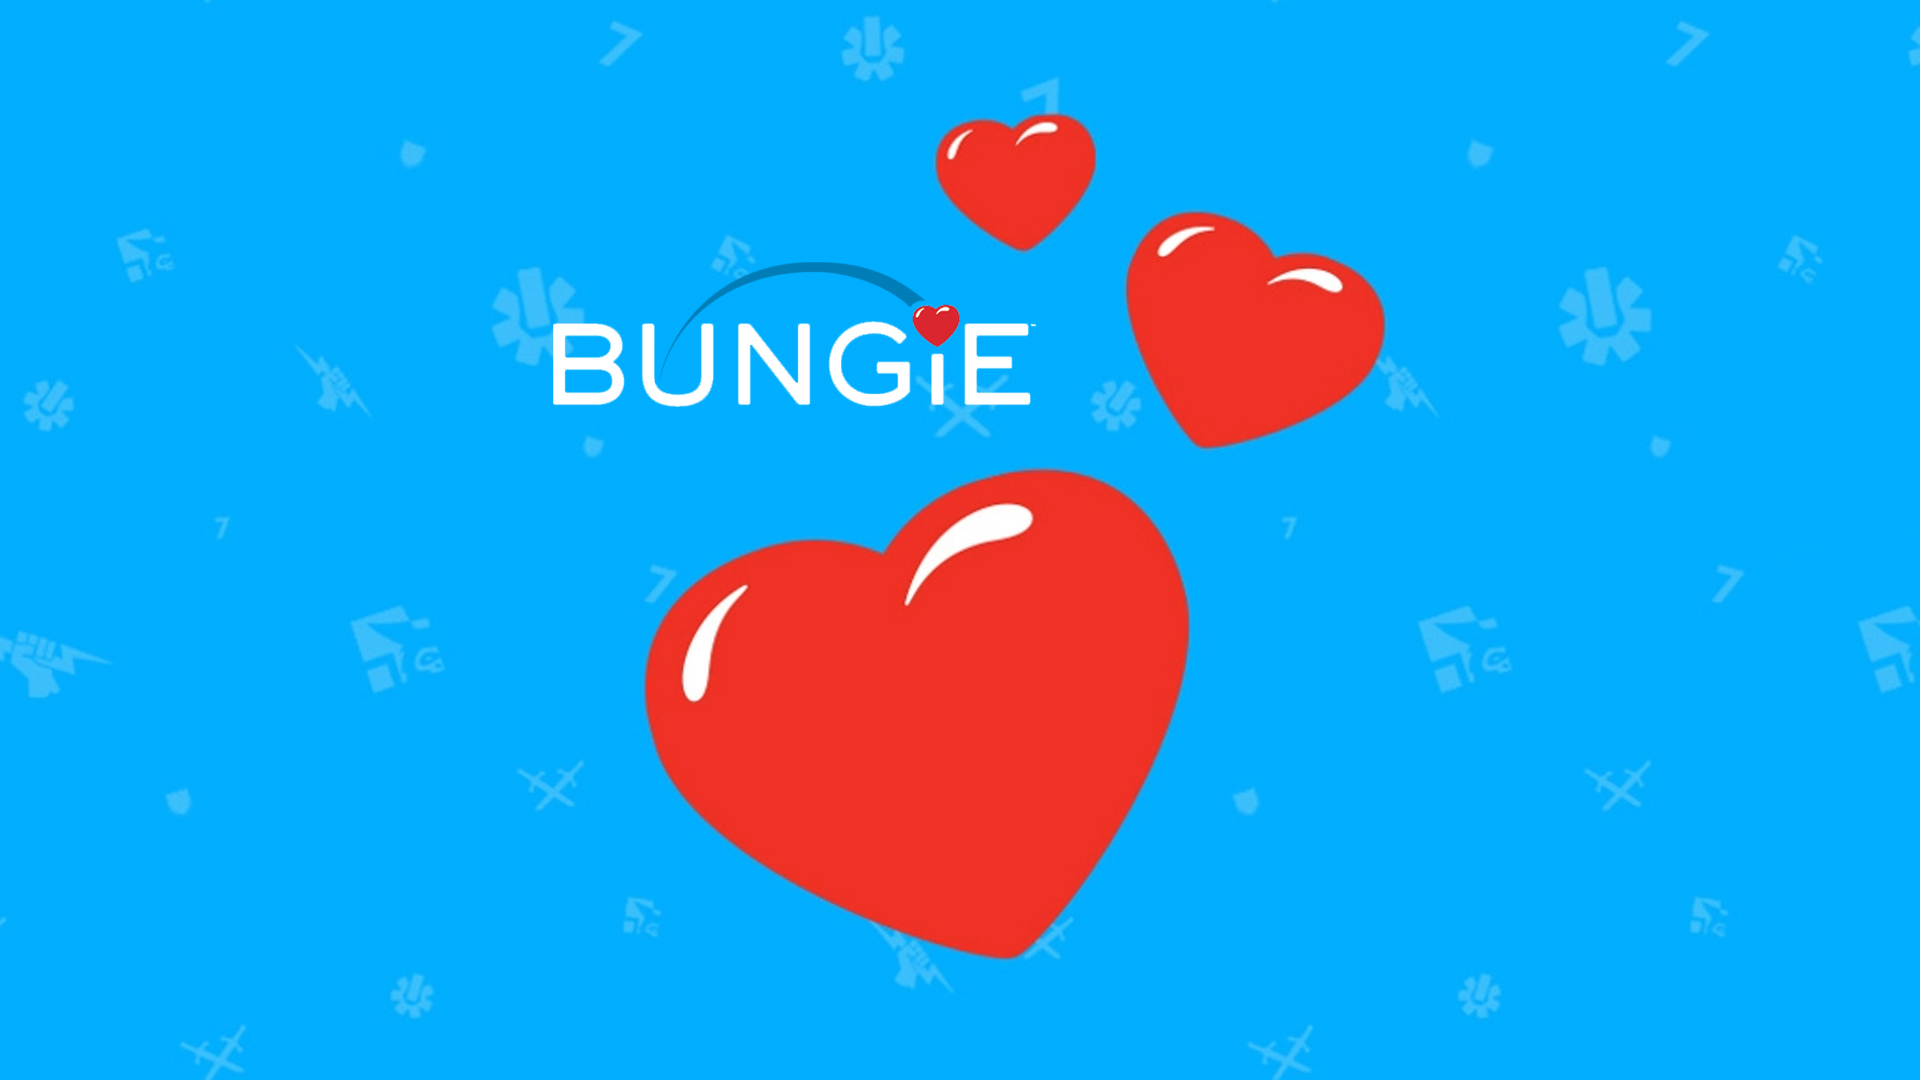 《命运2》开发商Bungie募集160万美元 帮助北美医院的儿童患者